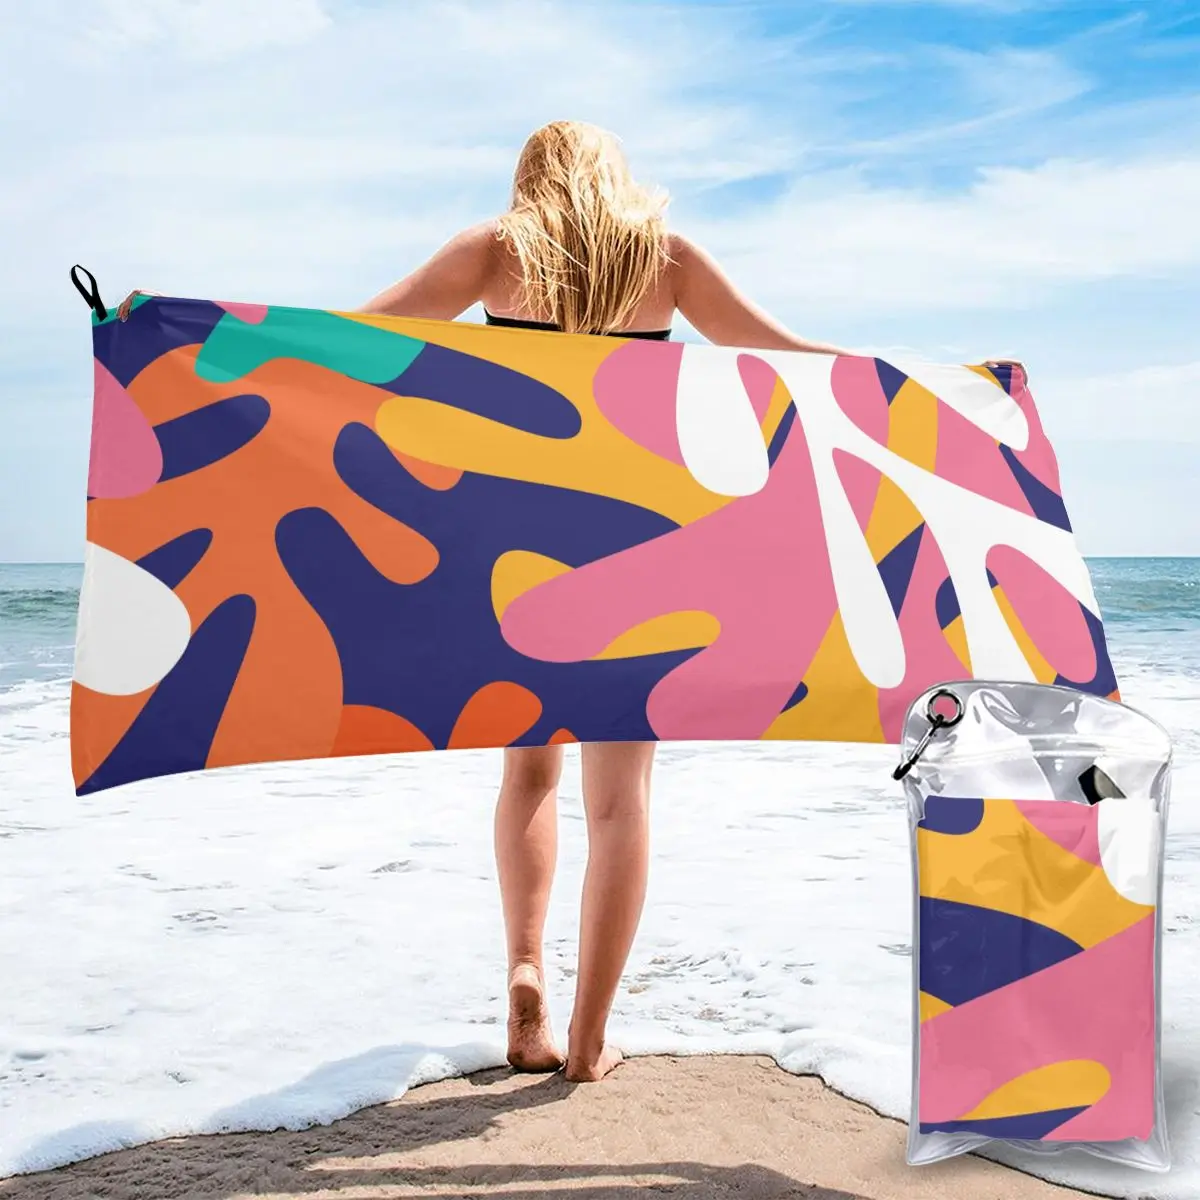 

Полотенце для купания, разноцветное банное полотенце в форме Анри Матисса, быстросохнущее пляжное спа, волшебное Ночное Белье для сна